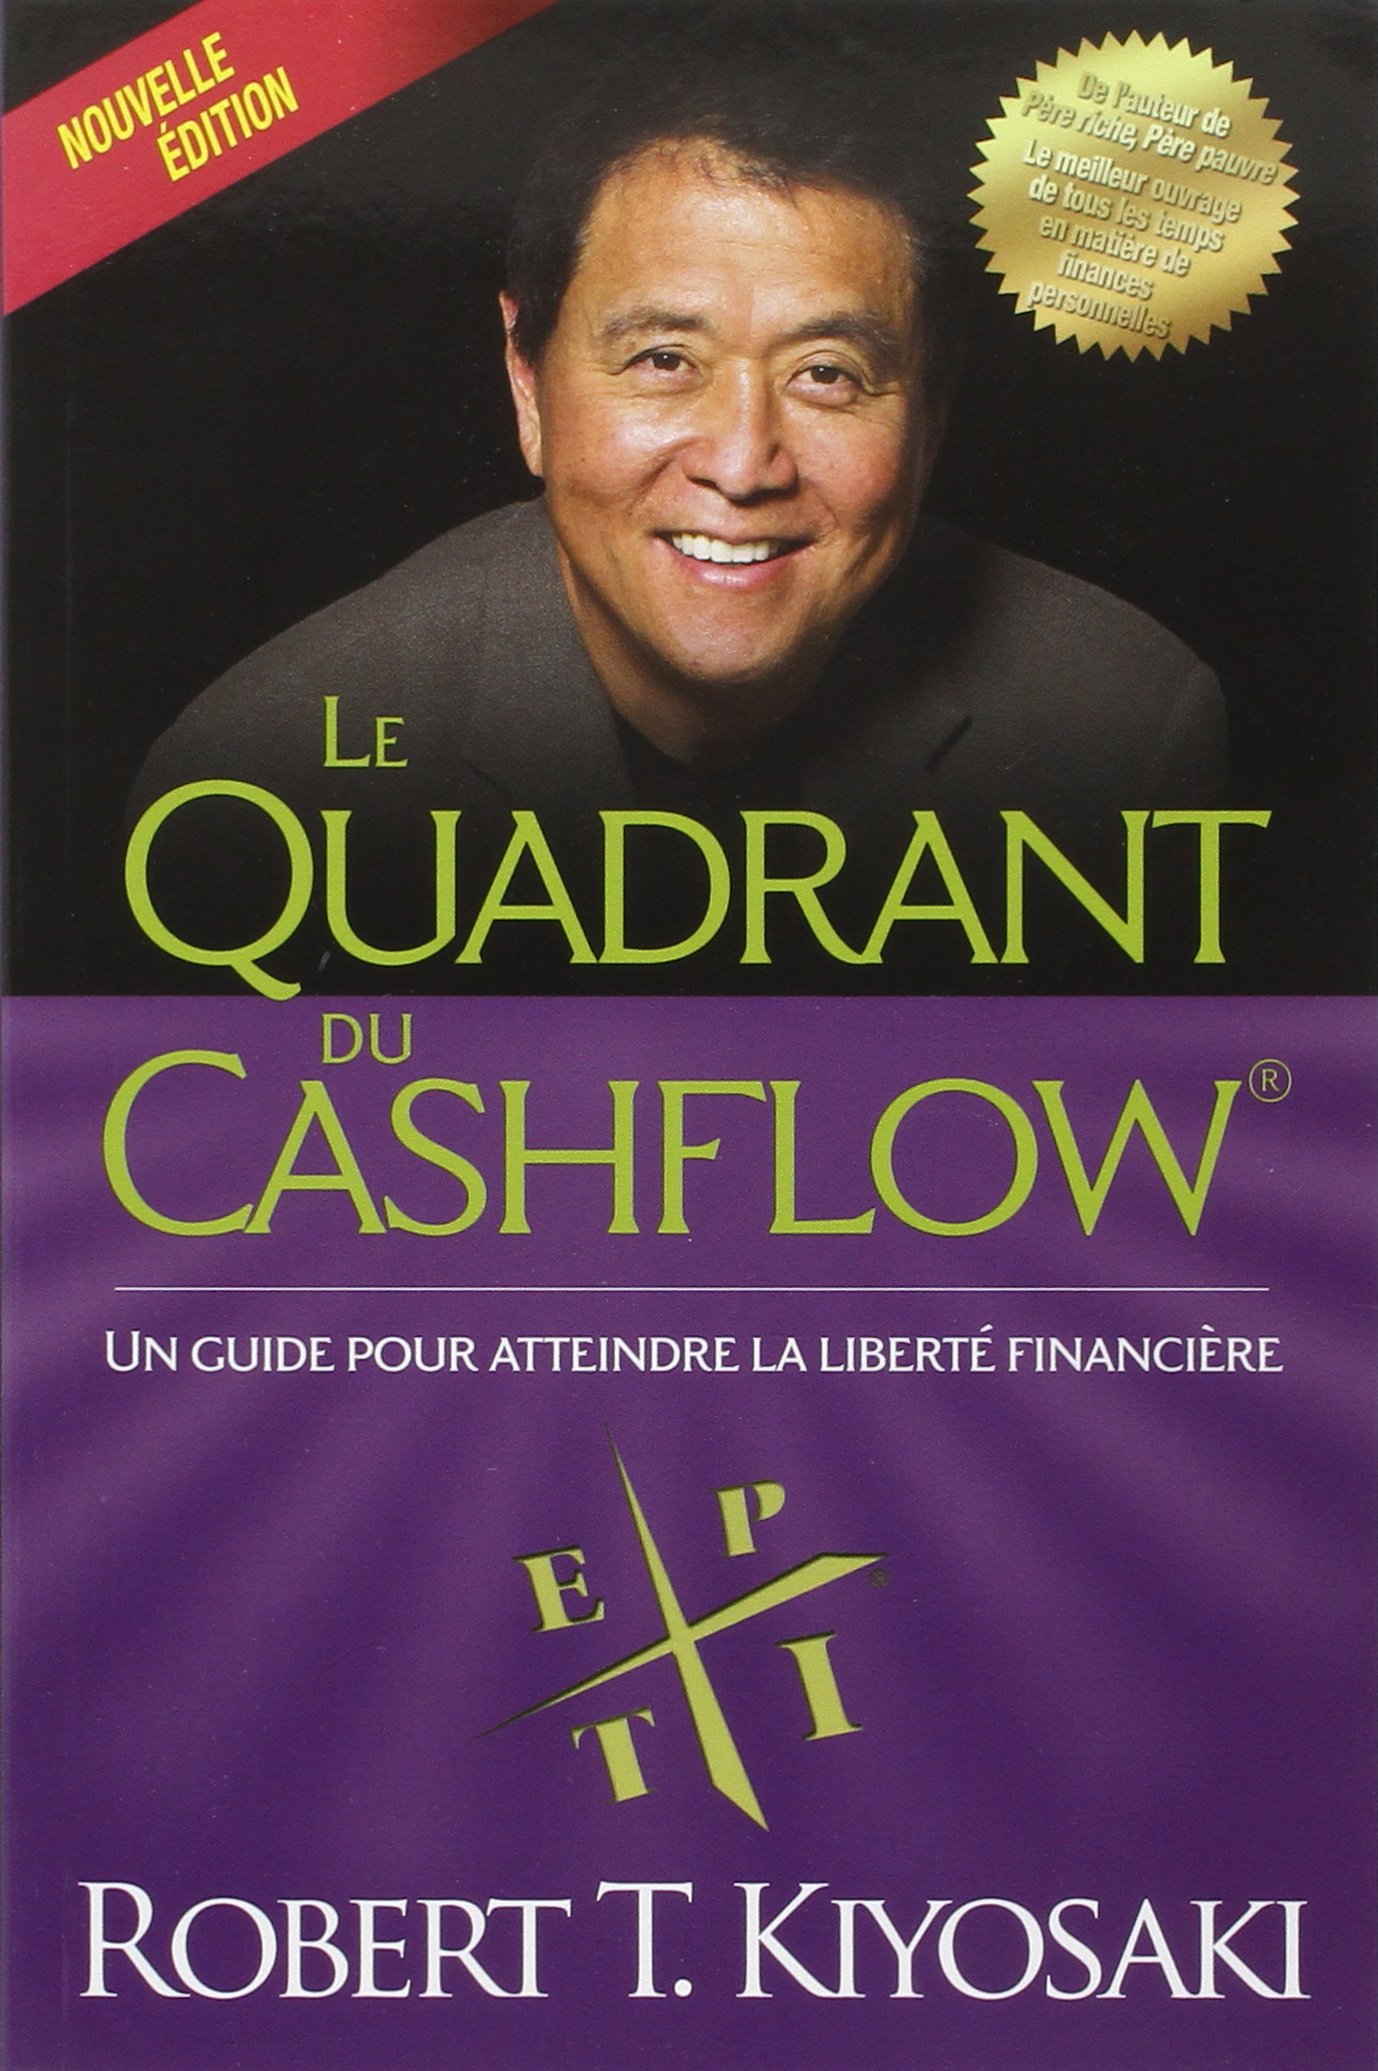 Couverture - Le quadrant du cashflow – Robert Kiyosaki 